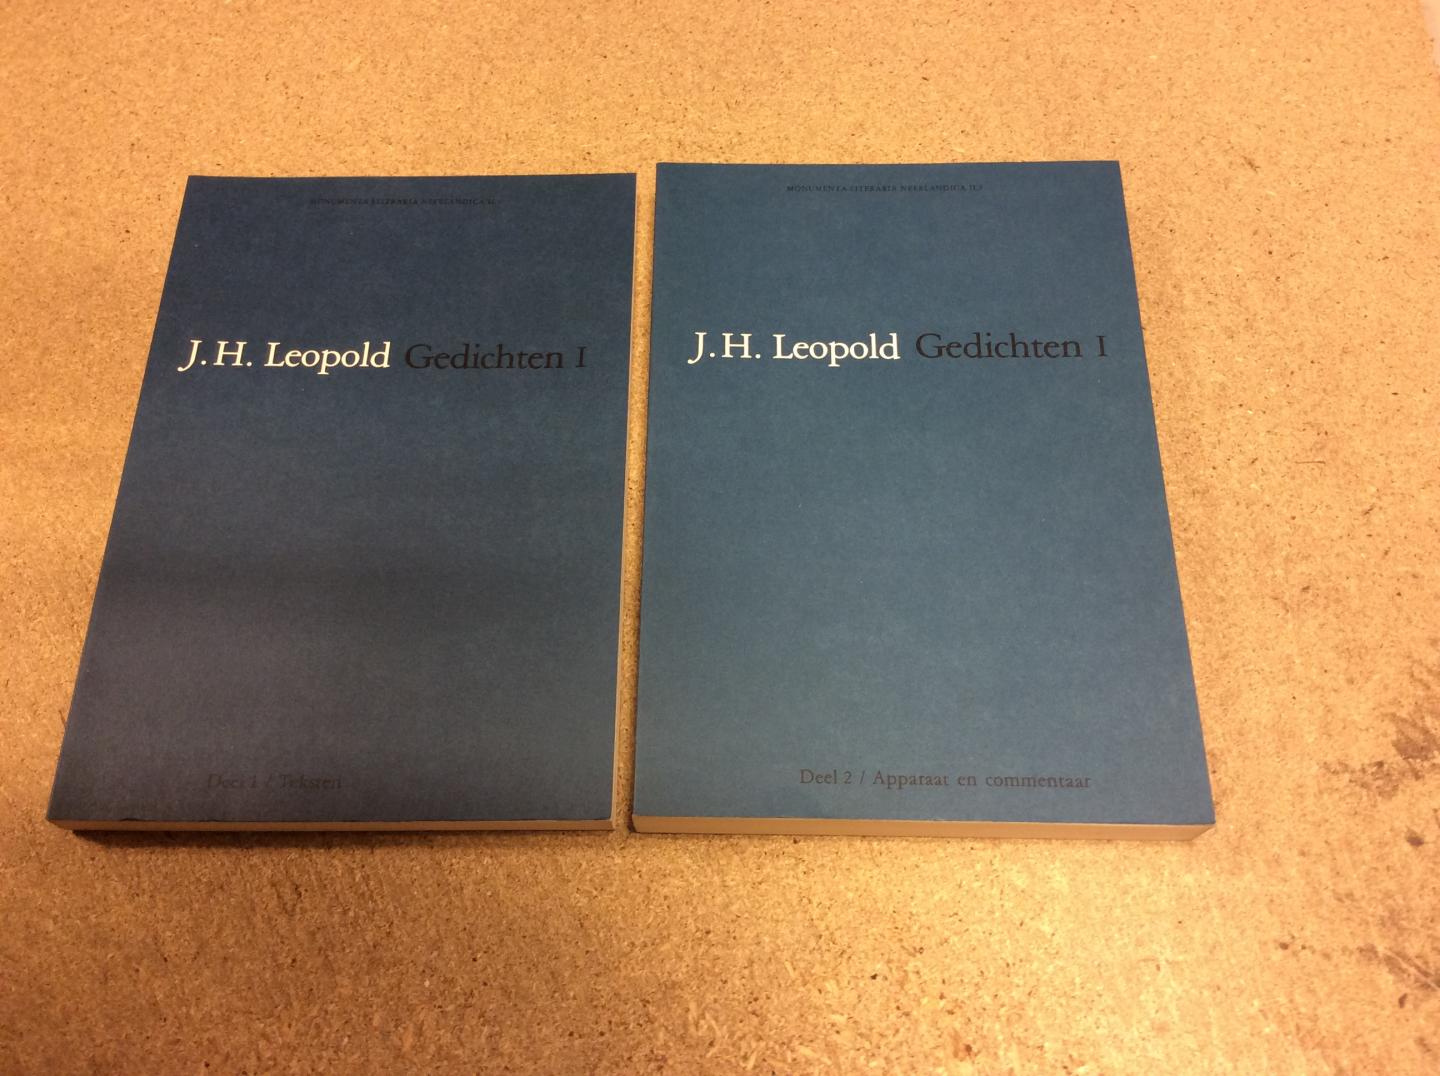 Leopold, J.H. | verzorgd door A.L. Sötemann en H.T.M. van Vliet - J.H. Leopold Gedichten I. De tijdens het leven van de dichter gepubliceerde poëzie (2 delen compleet) : Deel 1 / Teksten ; Deel 2 / Apparaat en commentaar